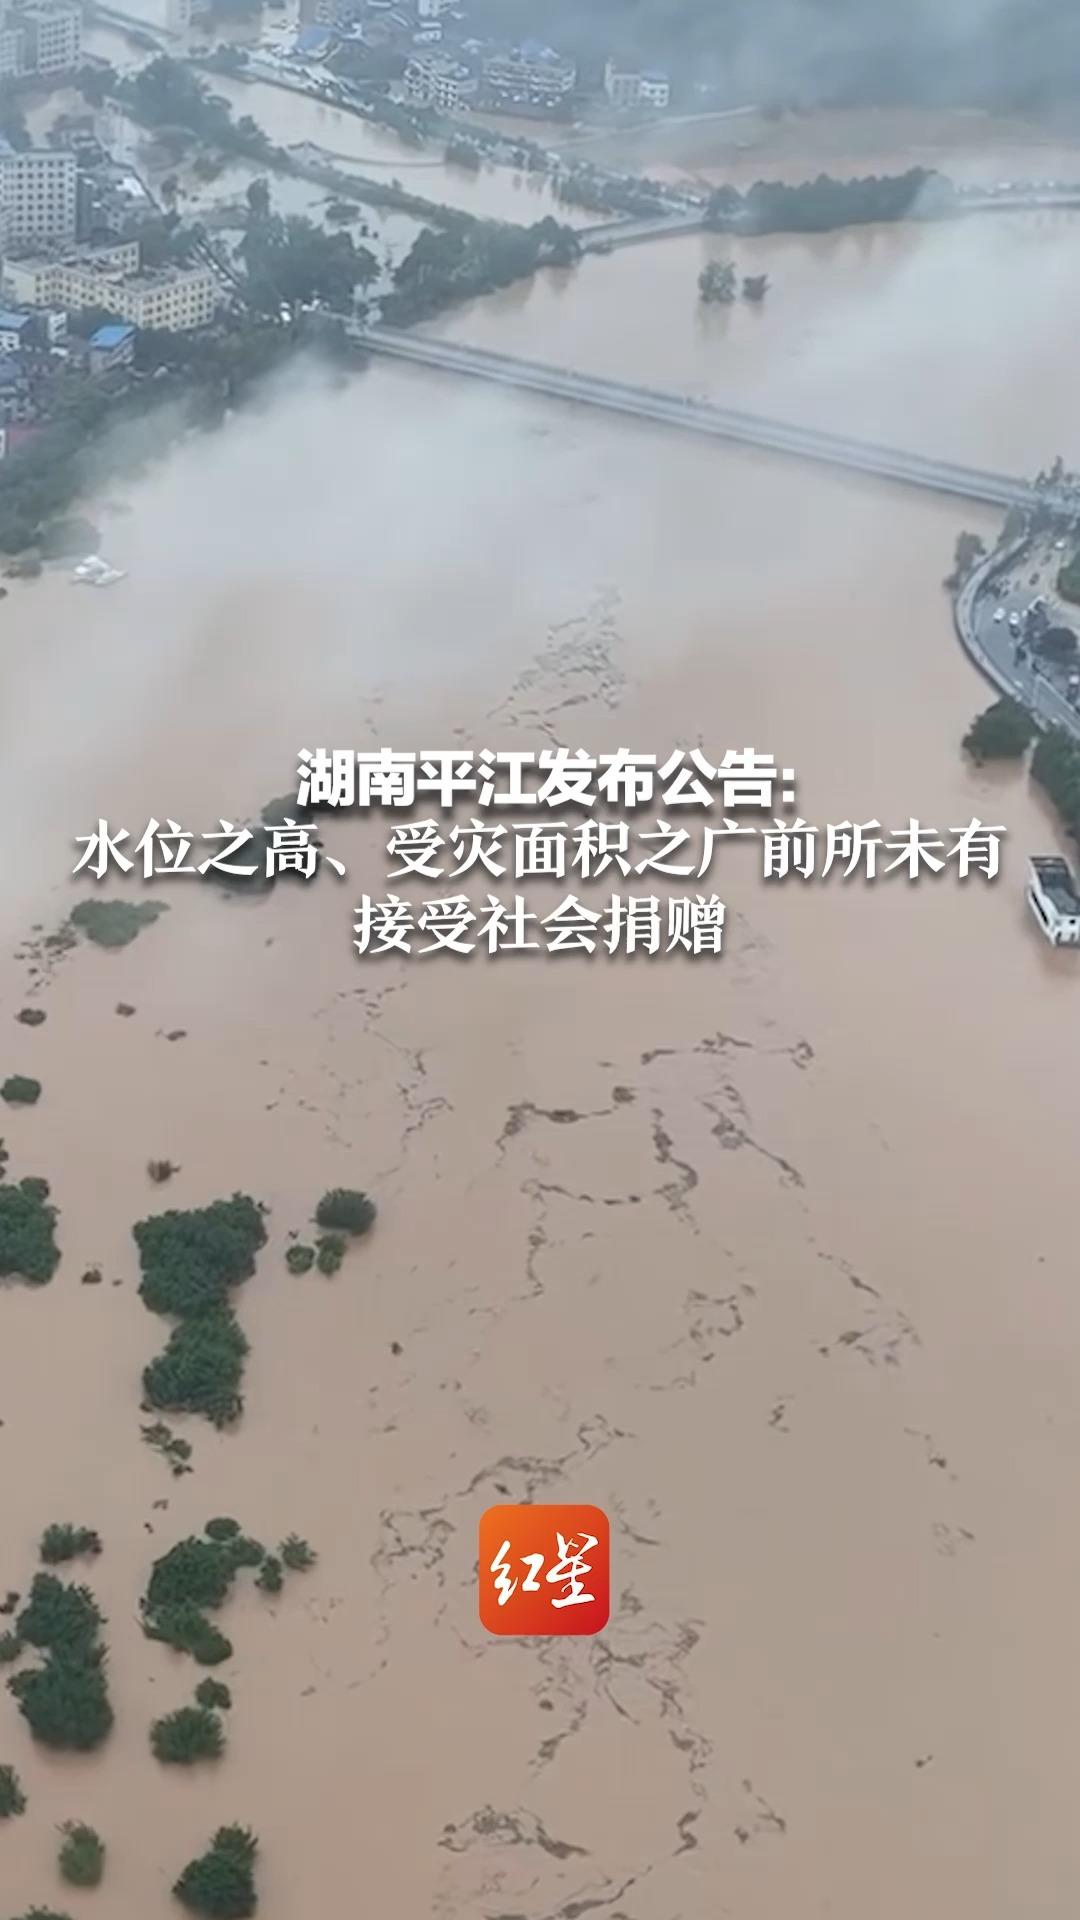 湖南平江发布公告：水位之高、受灾面积之广前所未有 接受社会捐赠